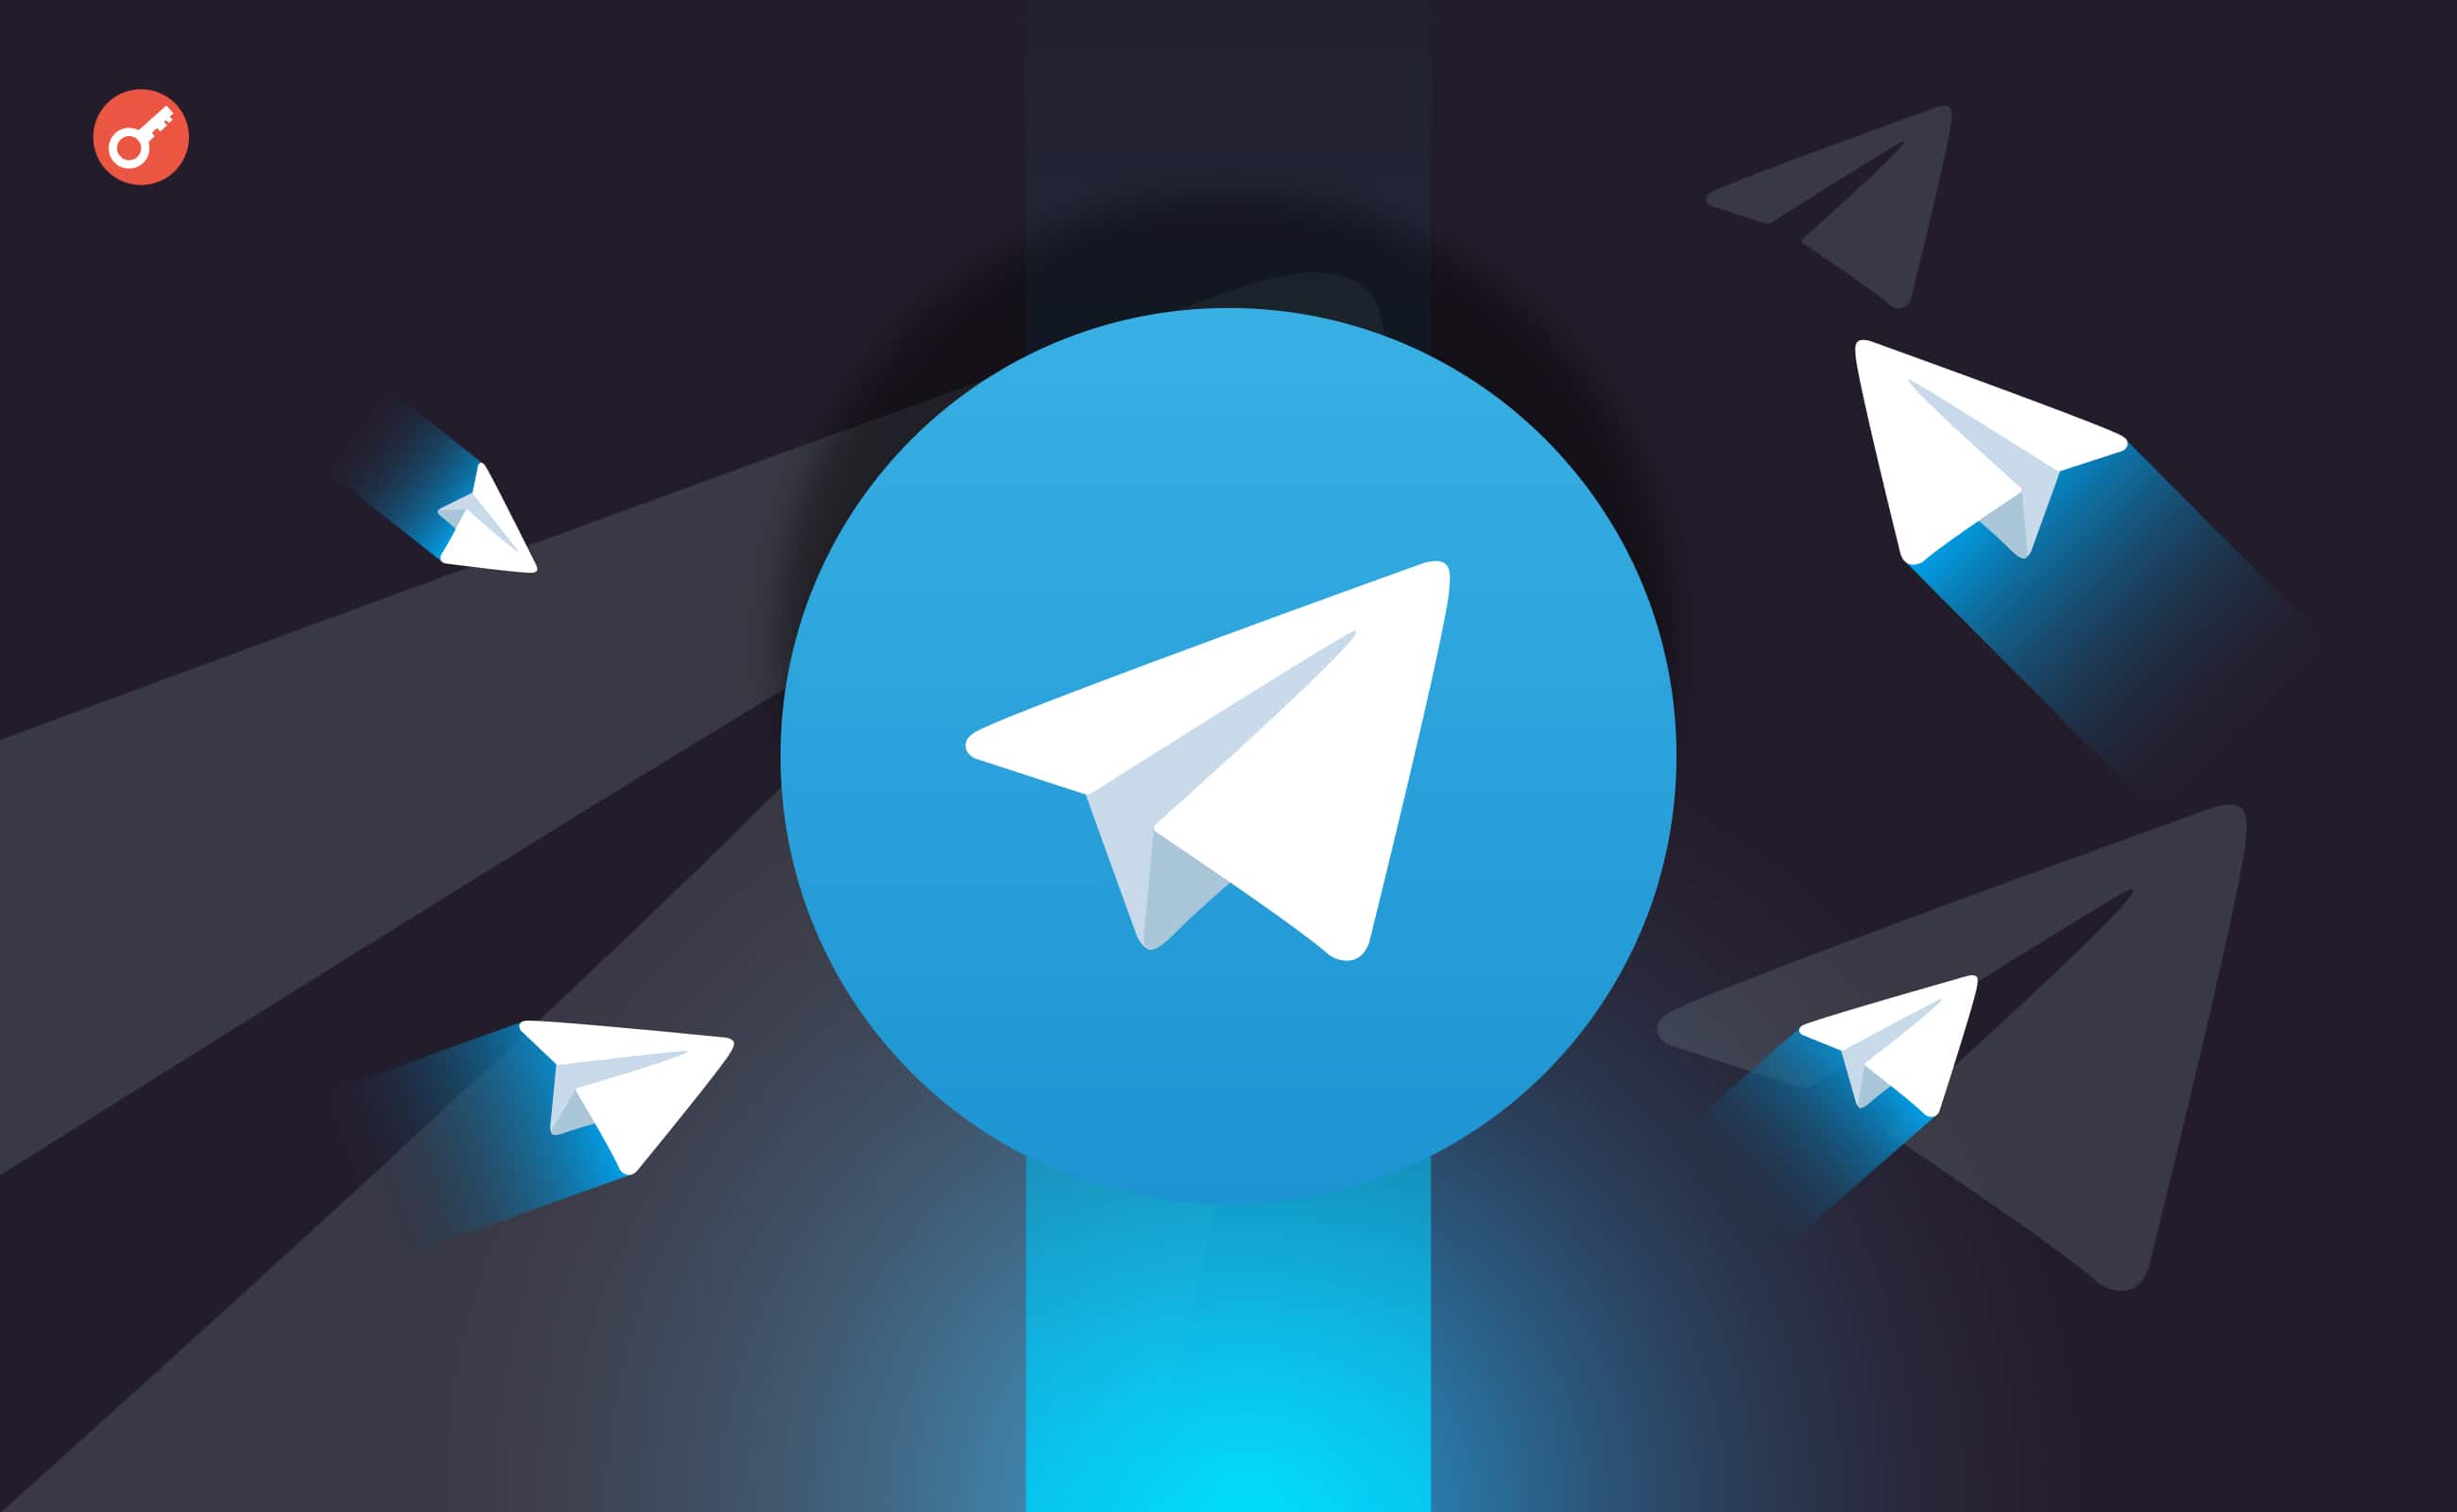 Павел Дуров рассказал о рыночной оценке Telegram и подготовке компании к IPO. Заглавный коллаж новости.